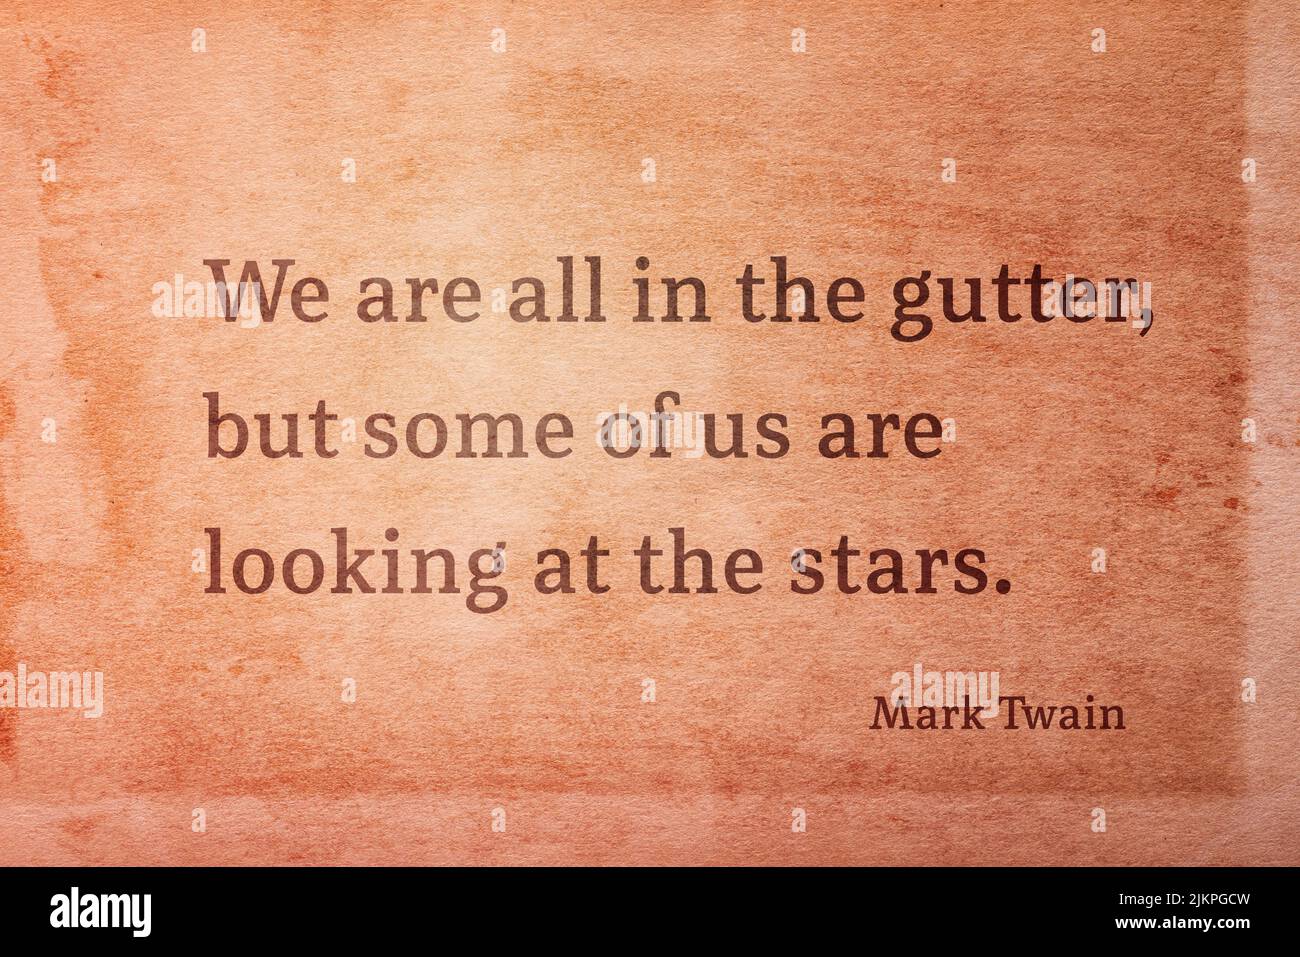 Wir sind alle in der Rinne, aber einige von uns schauen auf die Stars - der berühmte amerikanische Schriftsteller Mark Twain Zitat gedruckt auf Vintage Grunge Papier Stockfoto